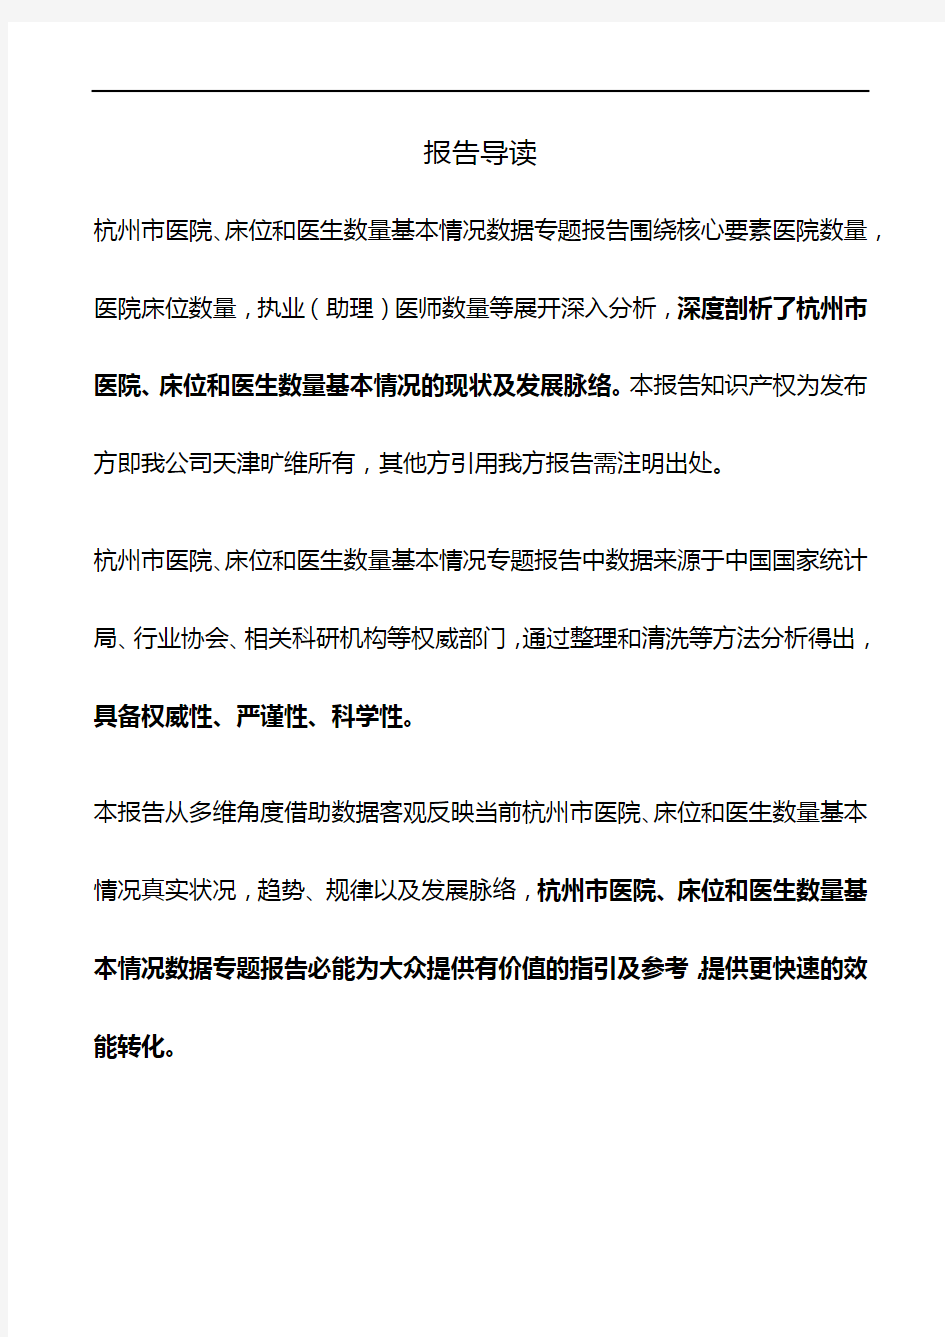 杭州市(市辖区)医院、床位和医生数量基本情况3年数据专题报告2019版